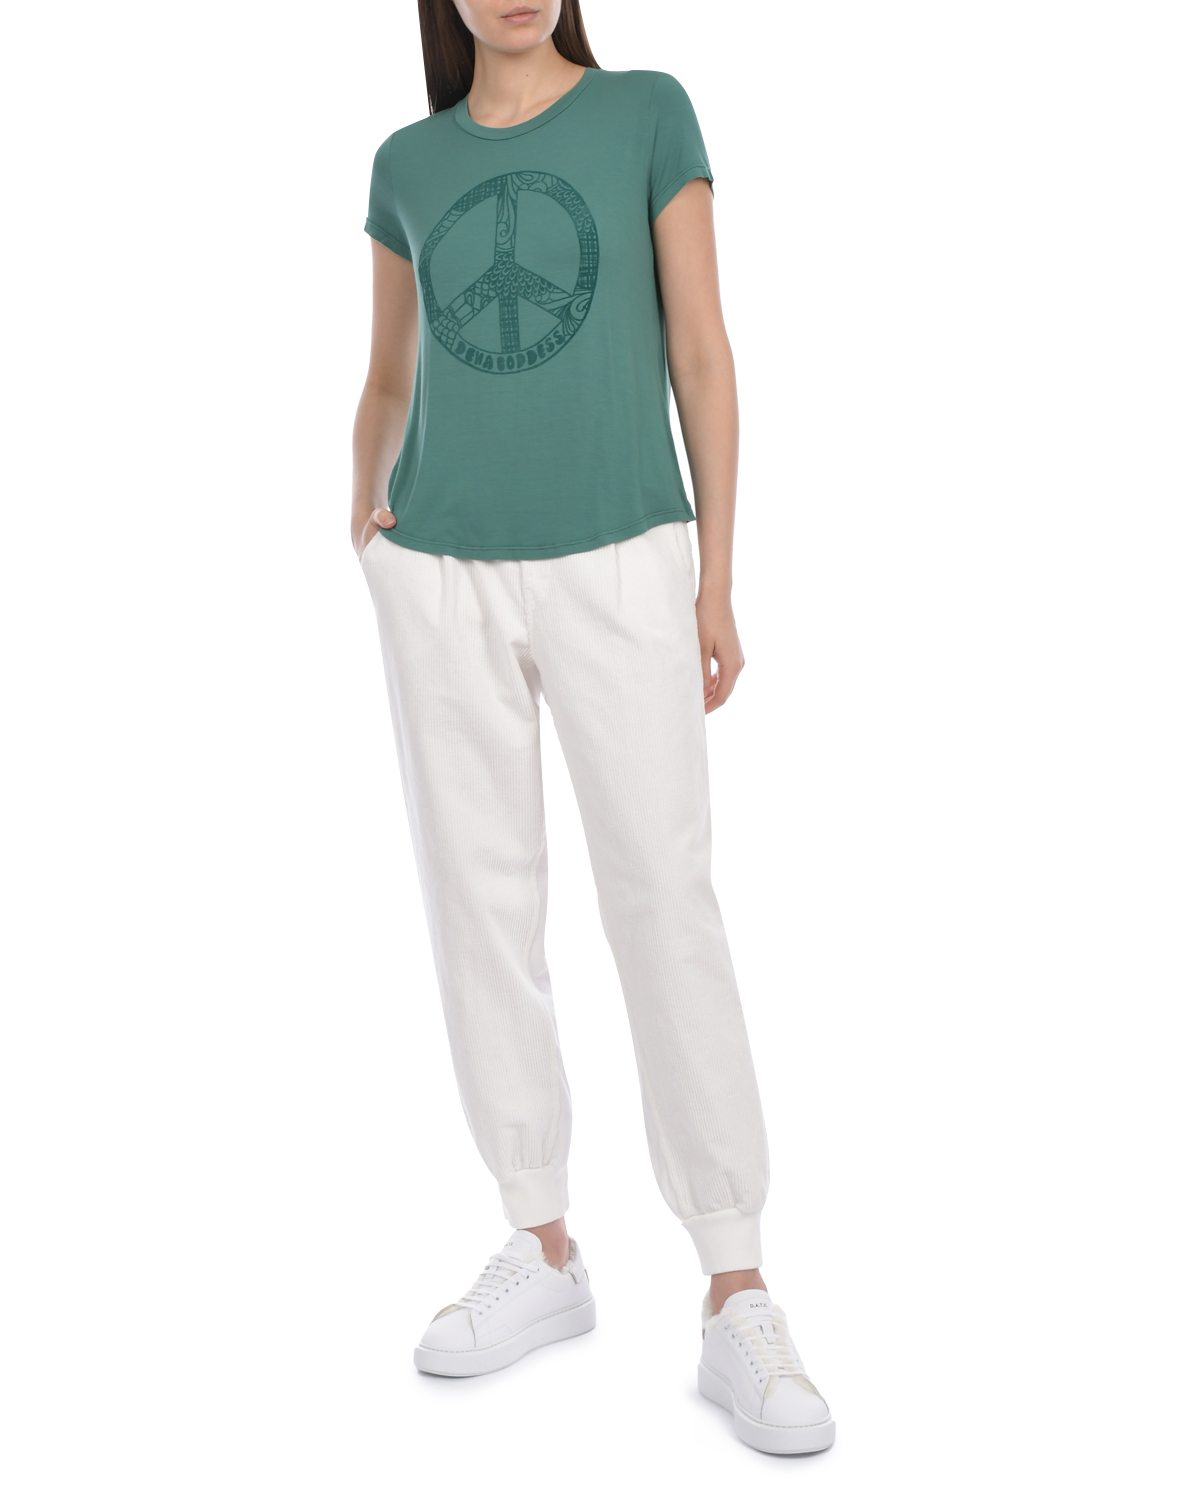 Зеленая футболка с принтом "Pacific" Deha, размер 40, цвет зеленый - фото 3